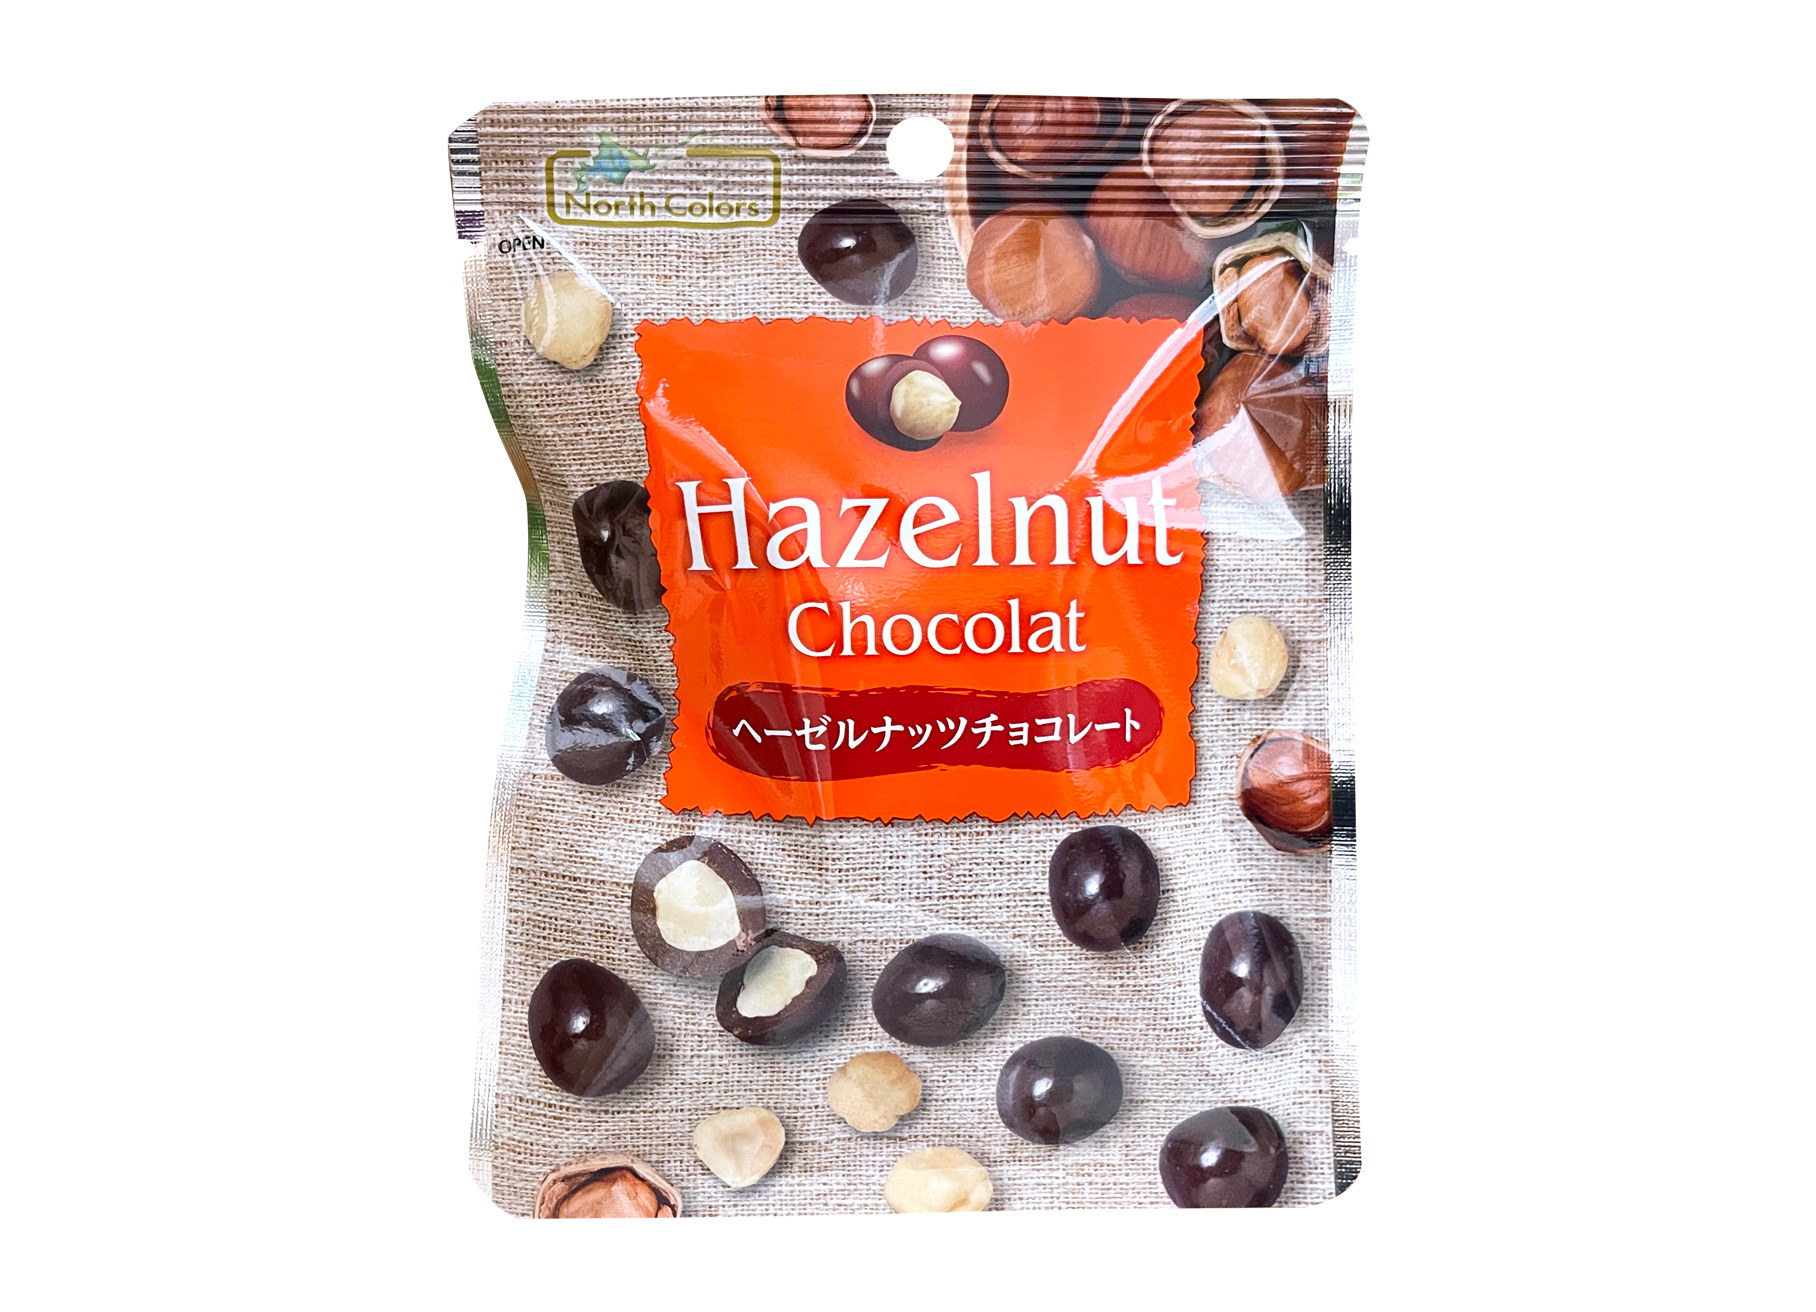 ノースカラーズ『ヘーゼルナッツチョコレート』は芳醇なカカオの奥深さとヘーゼルナッツの香ばしさが癖になるビターチョコレート◎